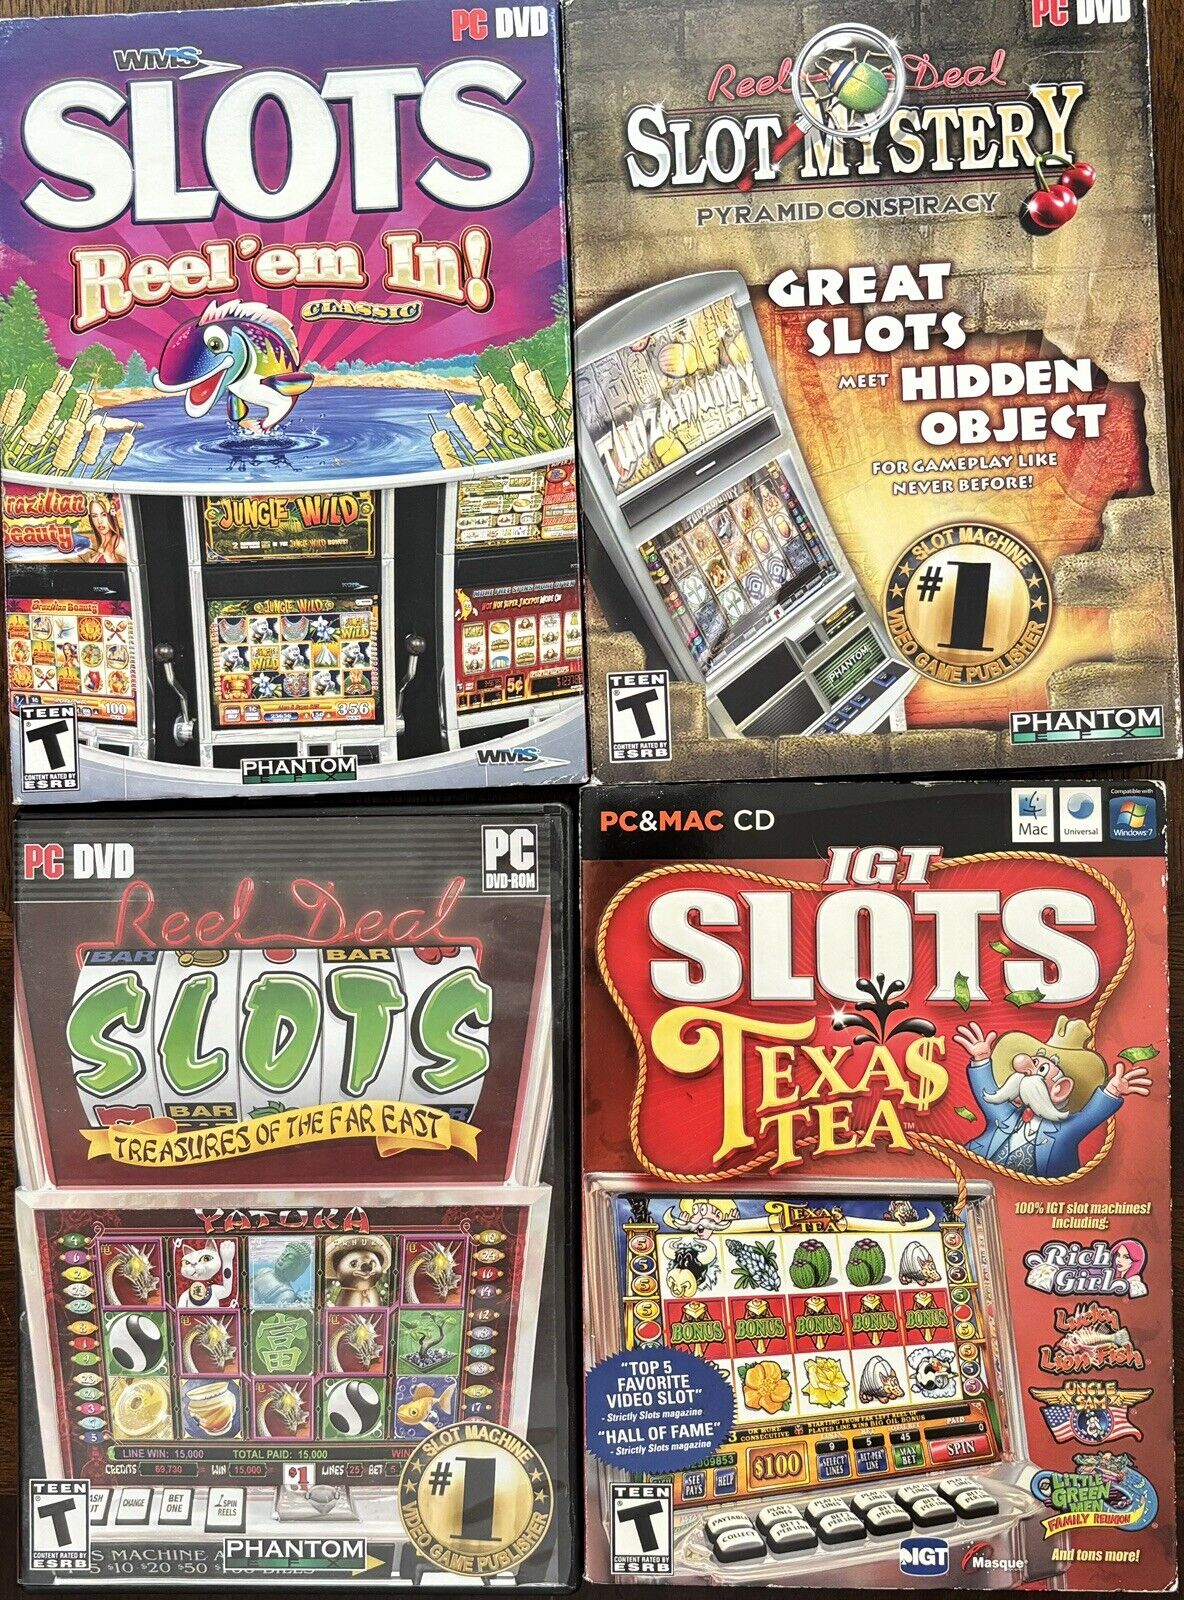 IGT Slots: Texas Tea (Windows/Mac, 2009)